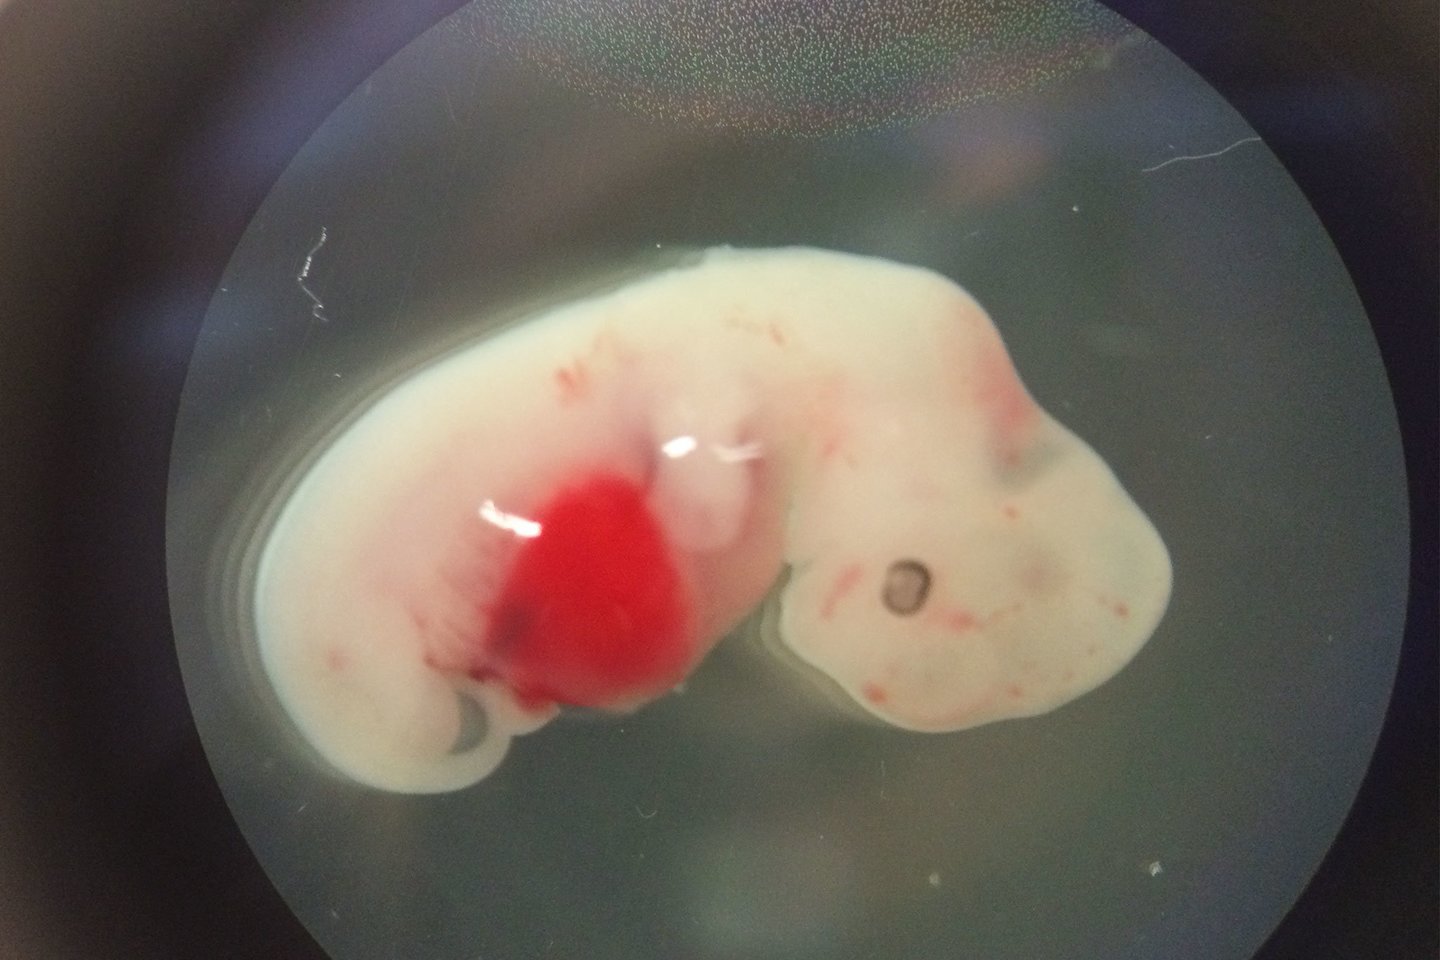  Ankstesniuose eskperimentuose sukurtas žmogaus ir kiaulės hibrido embrionas.<br>Juan Carlos Izpisua Belmonte nuotr.